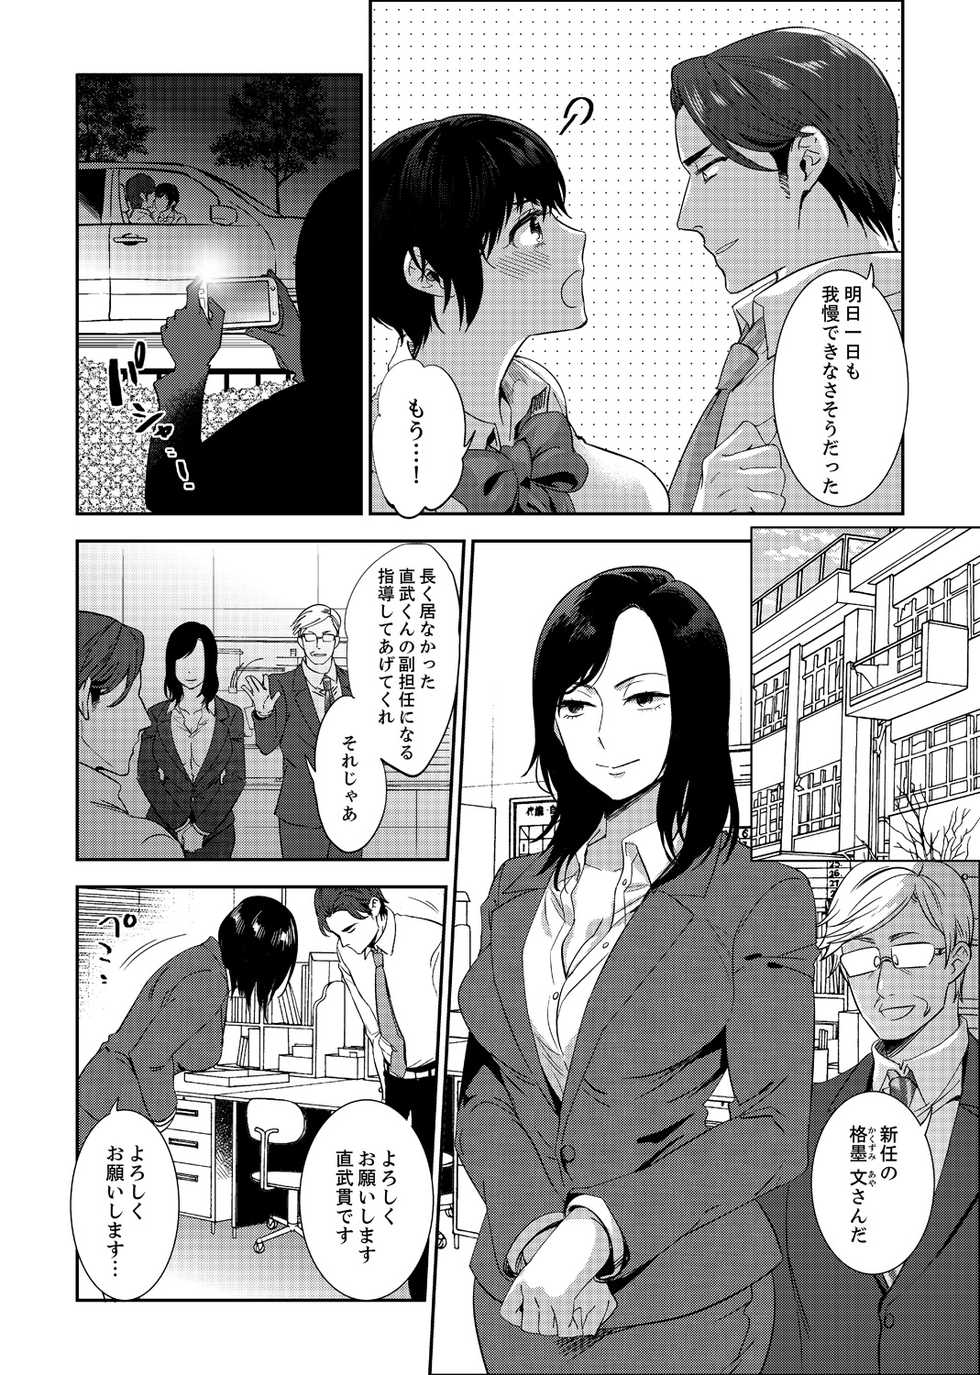 [Motika] Sensei, Houkago LoveHo de H Shiyo...? [Kanzenban] 2 - Page 40